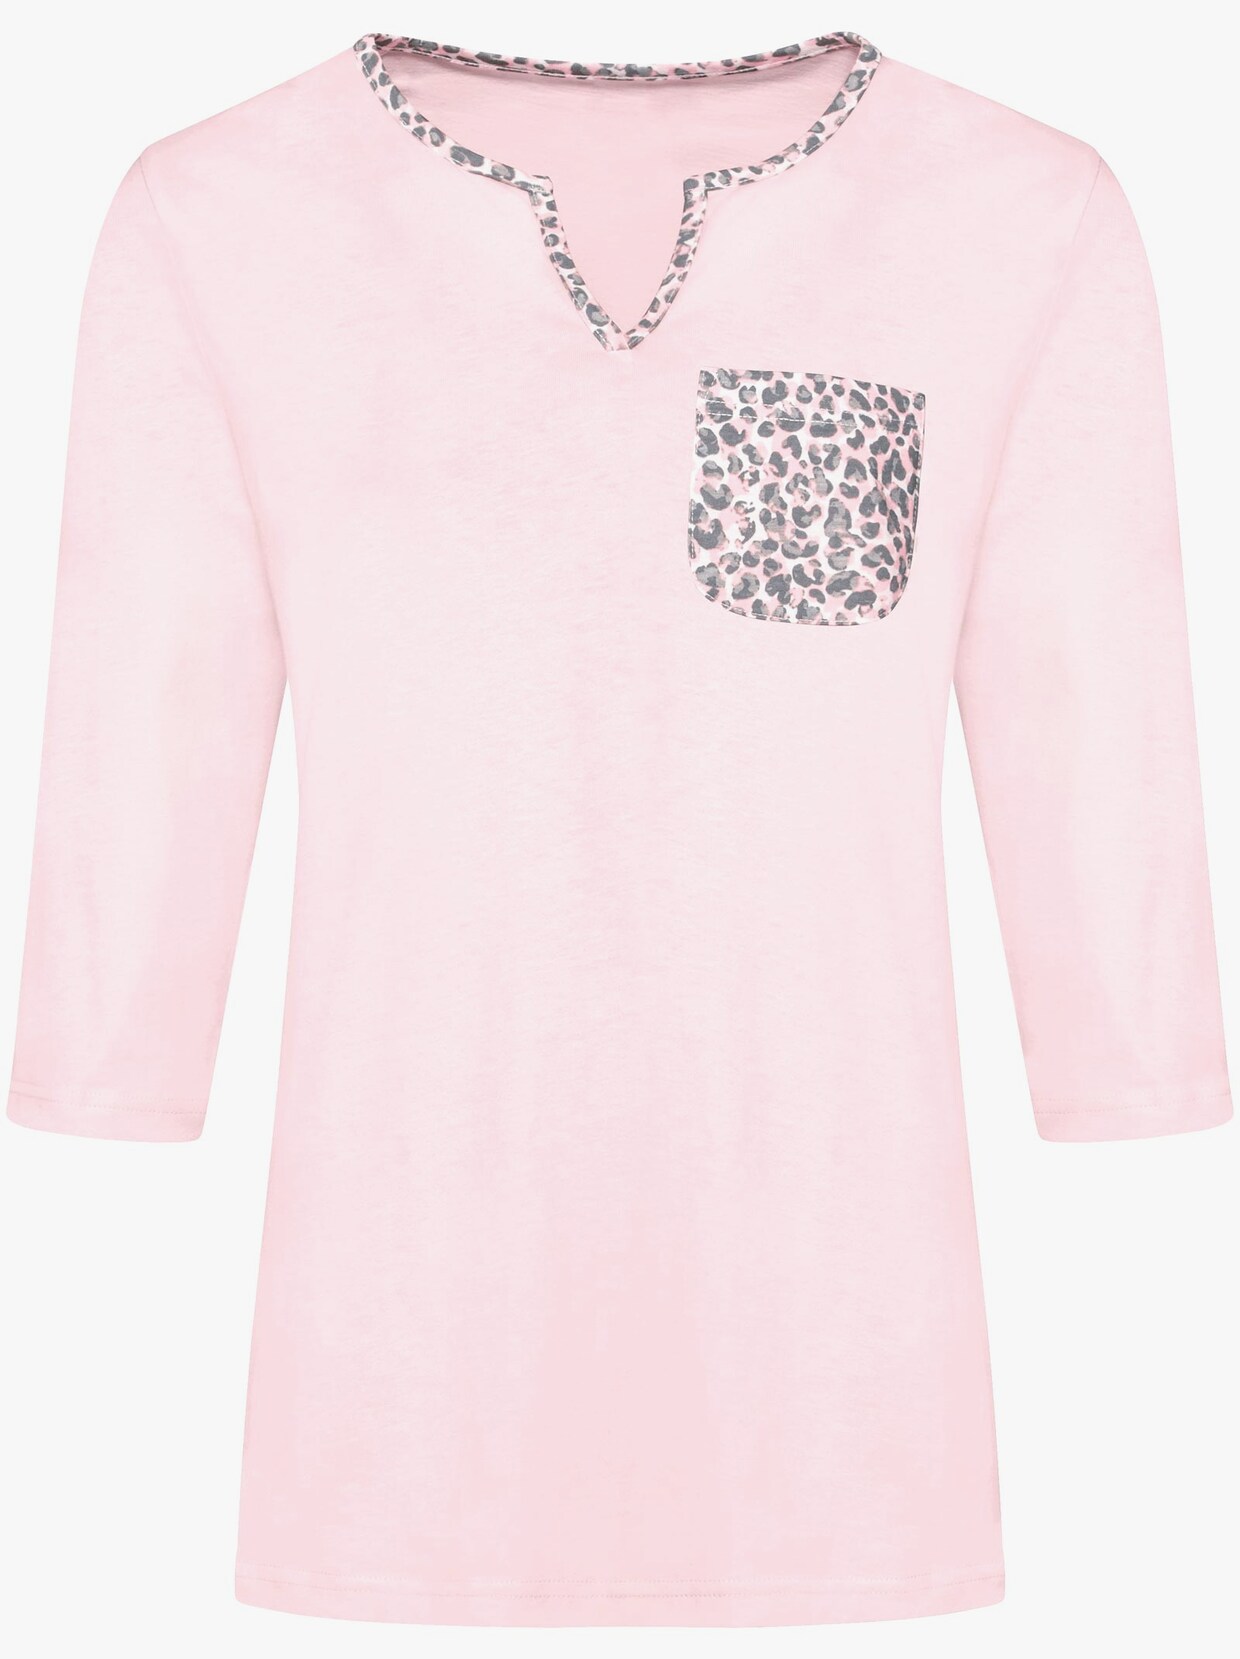 Capri pyžamo - růžová-šedá-potisk